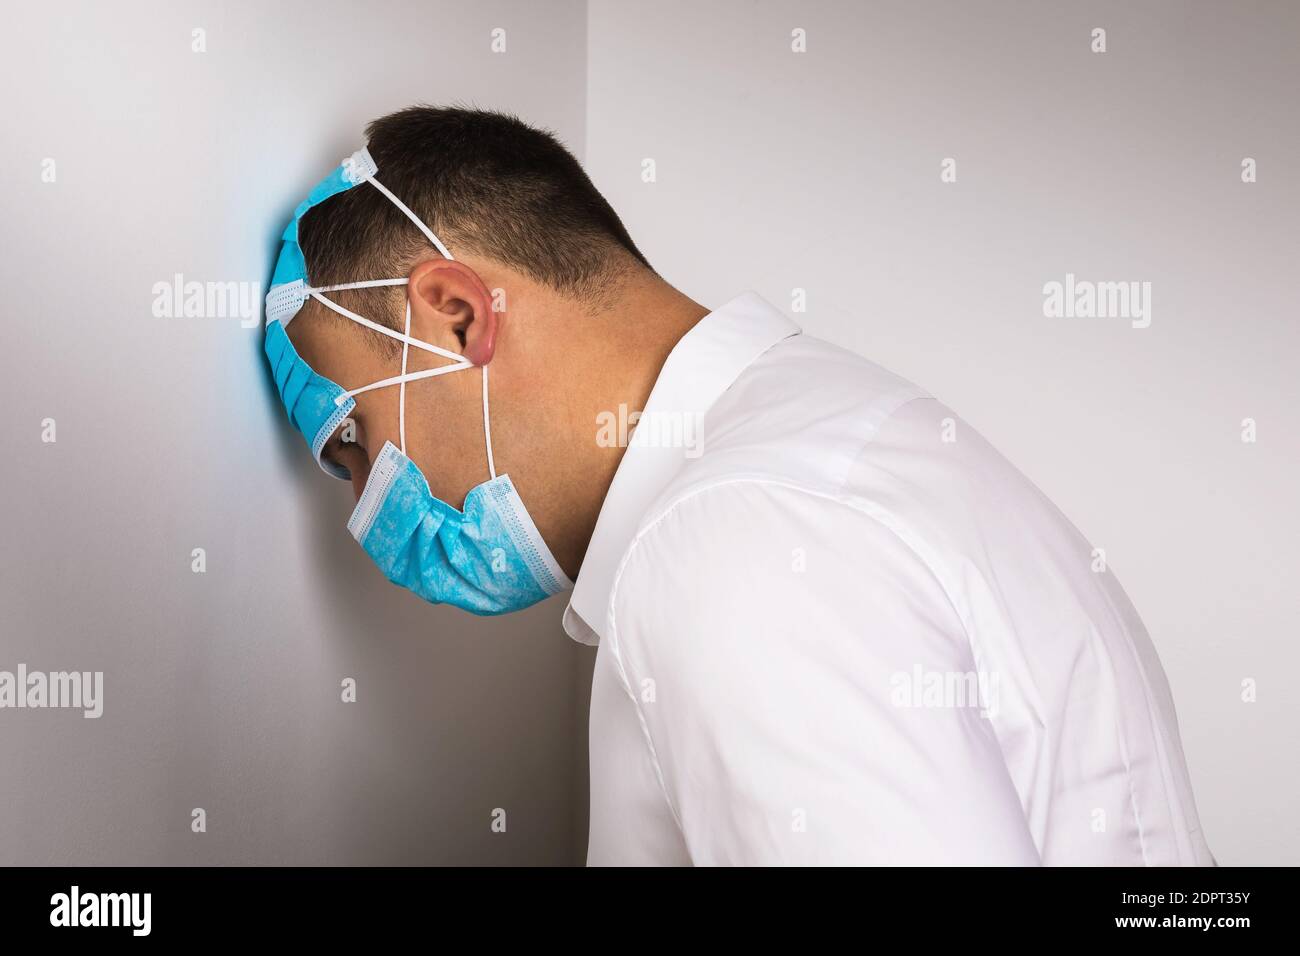 Ein Mann mit medizinischen Einwegmasken lehnte seinen Kopf gegen die Wand. Konzept zur Depression aufgrund von Quarantäne durch COVID-19 Pandemie verursacht. Stockfoto